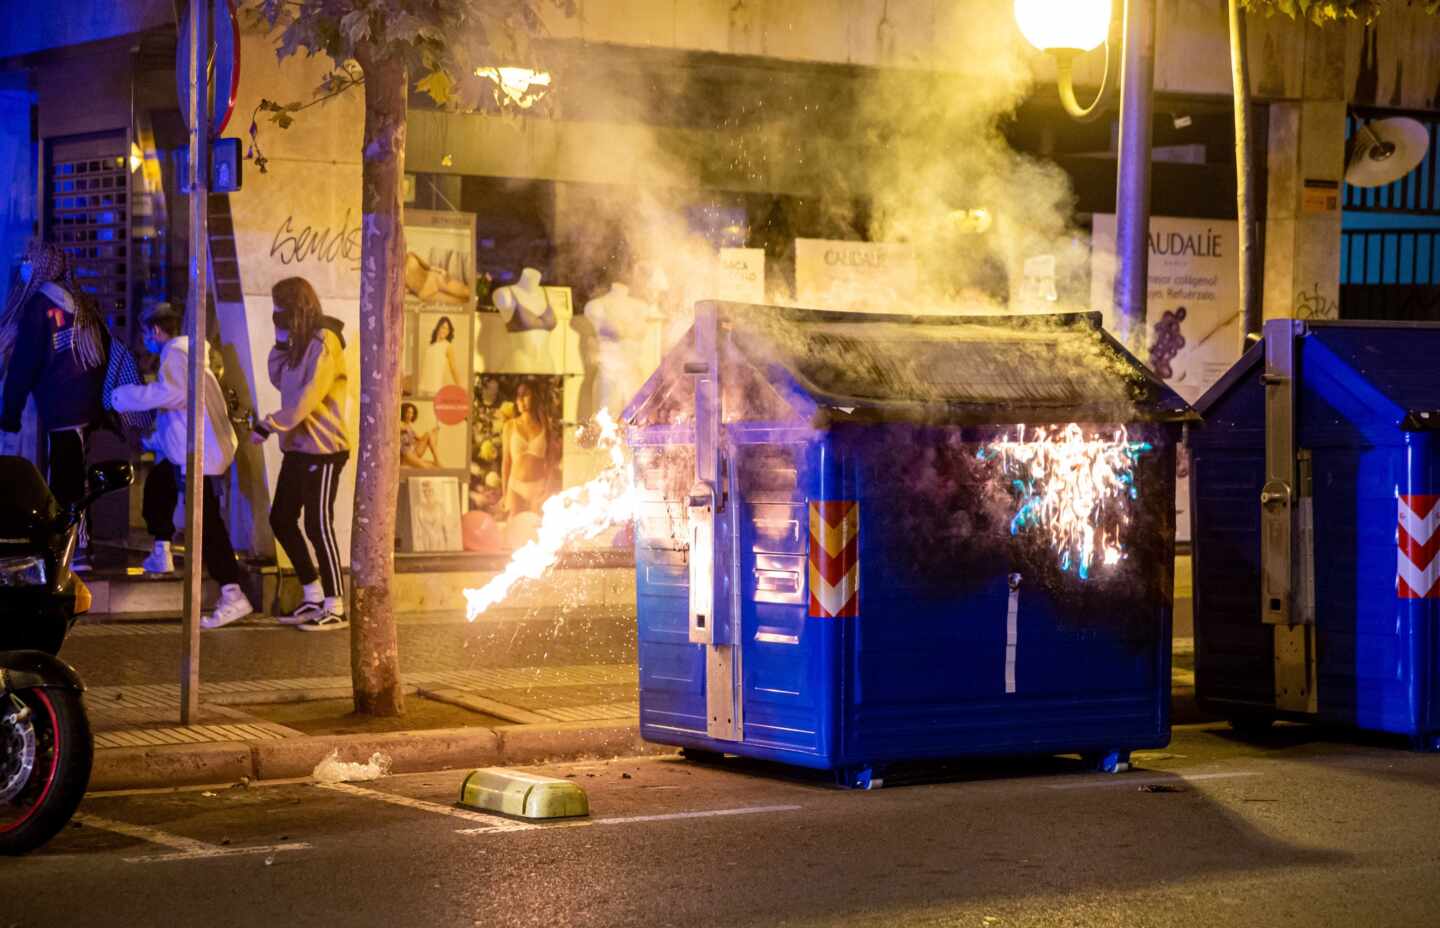 Vista del contenedor en llamas durante los nuevos incidentes registrados el domingo en Logroño.